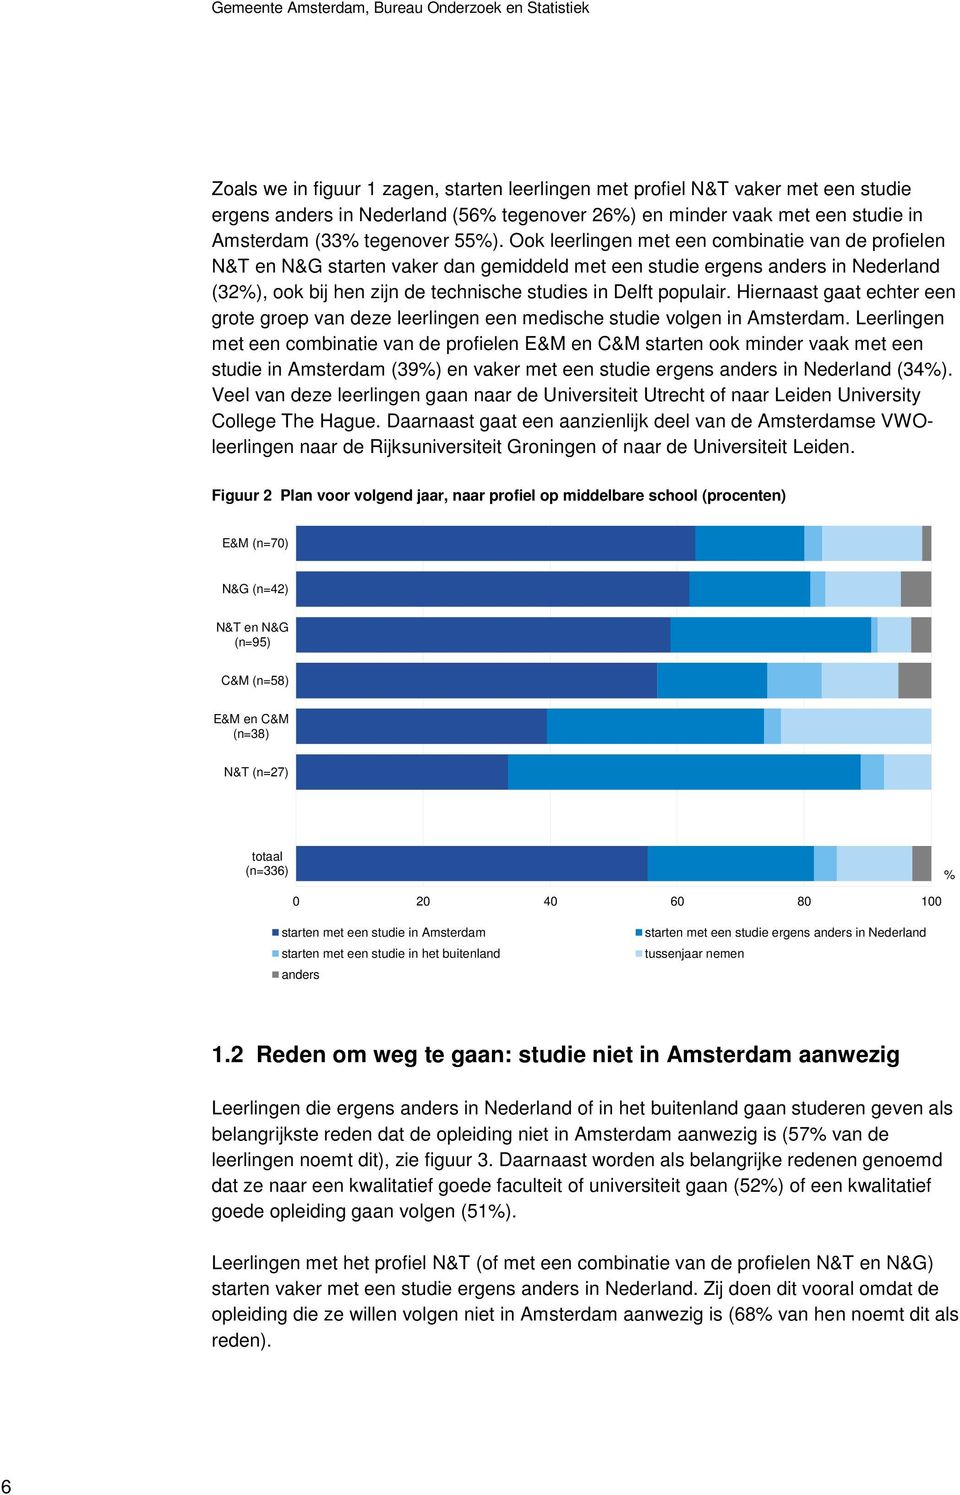 Ook leerlingen met een combinatie van de profielen N&T en N&G starten vaker dan gemiddeld met een studie ergens anders in Nederland (32%), ook bij hen zijn de technische studies in Delft populair.